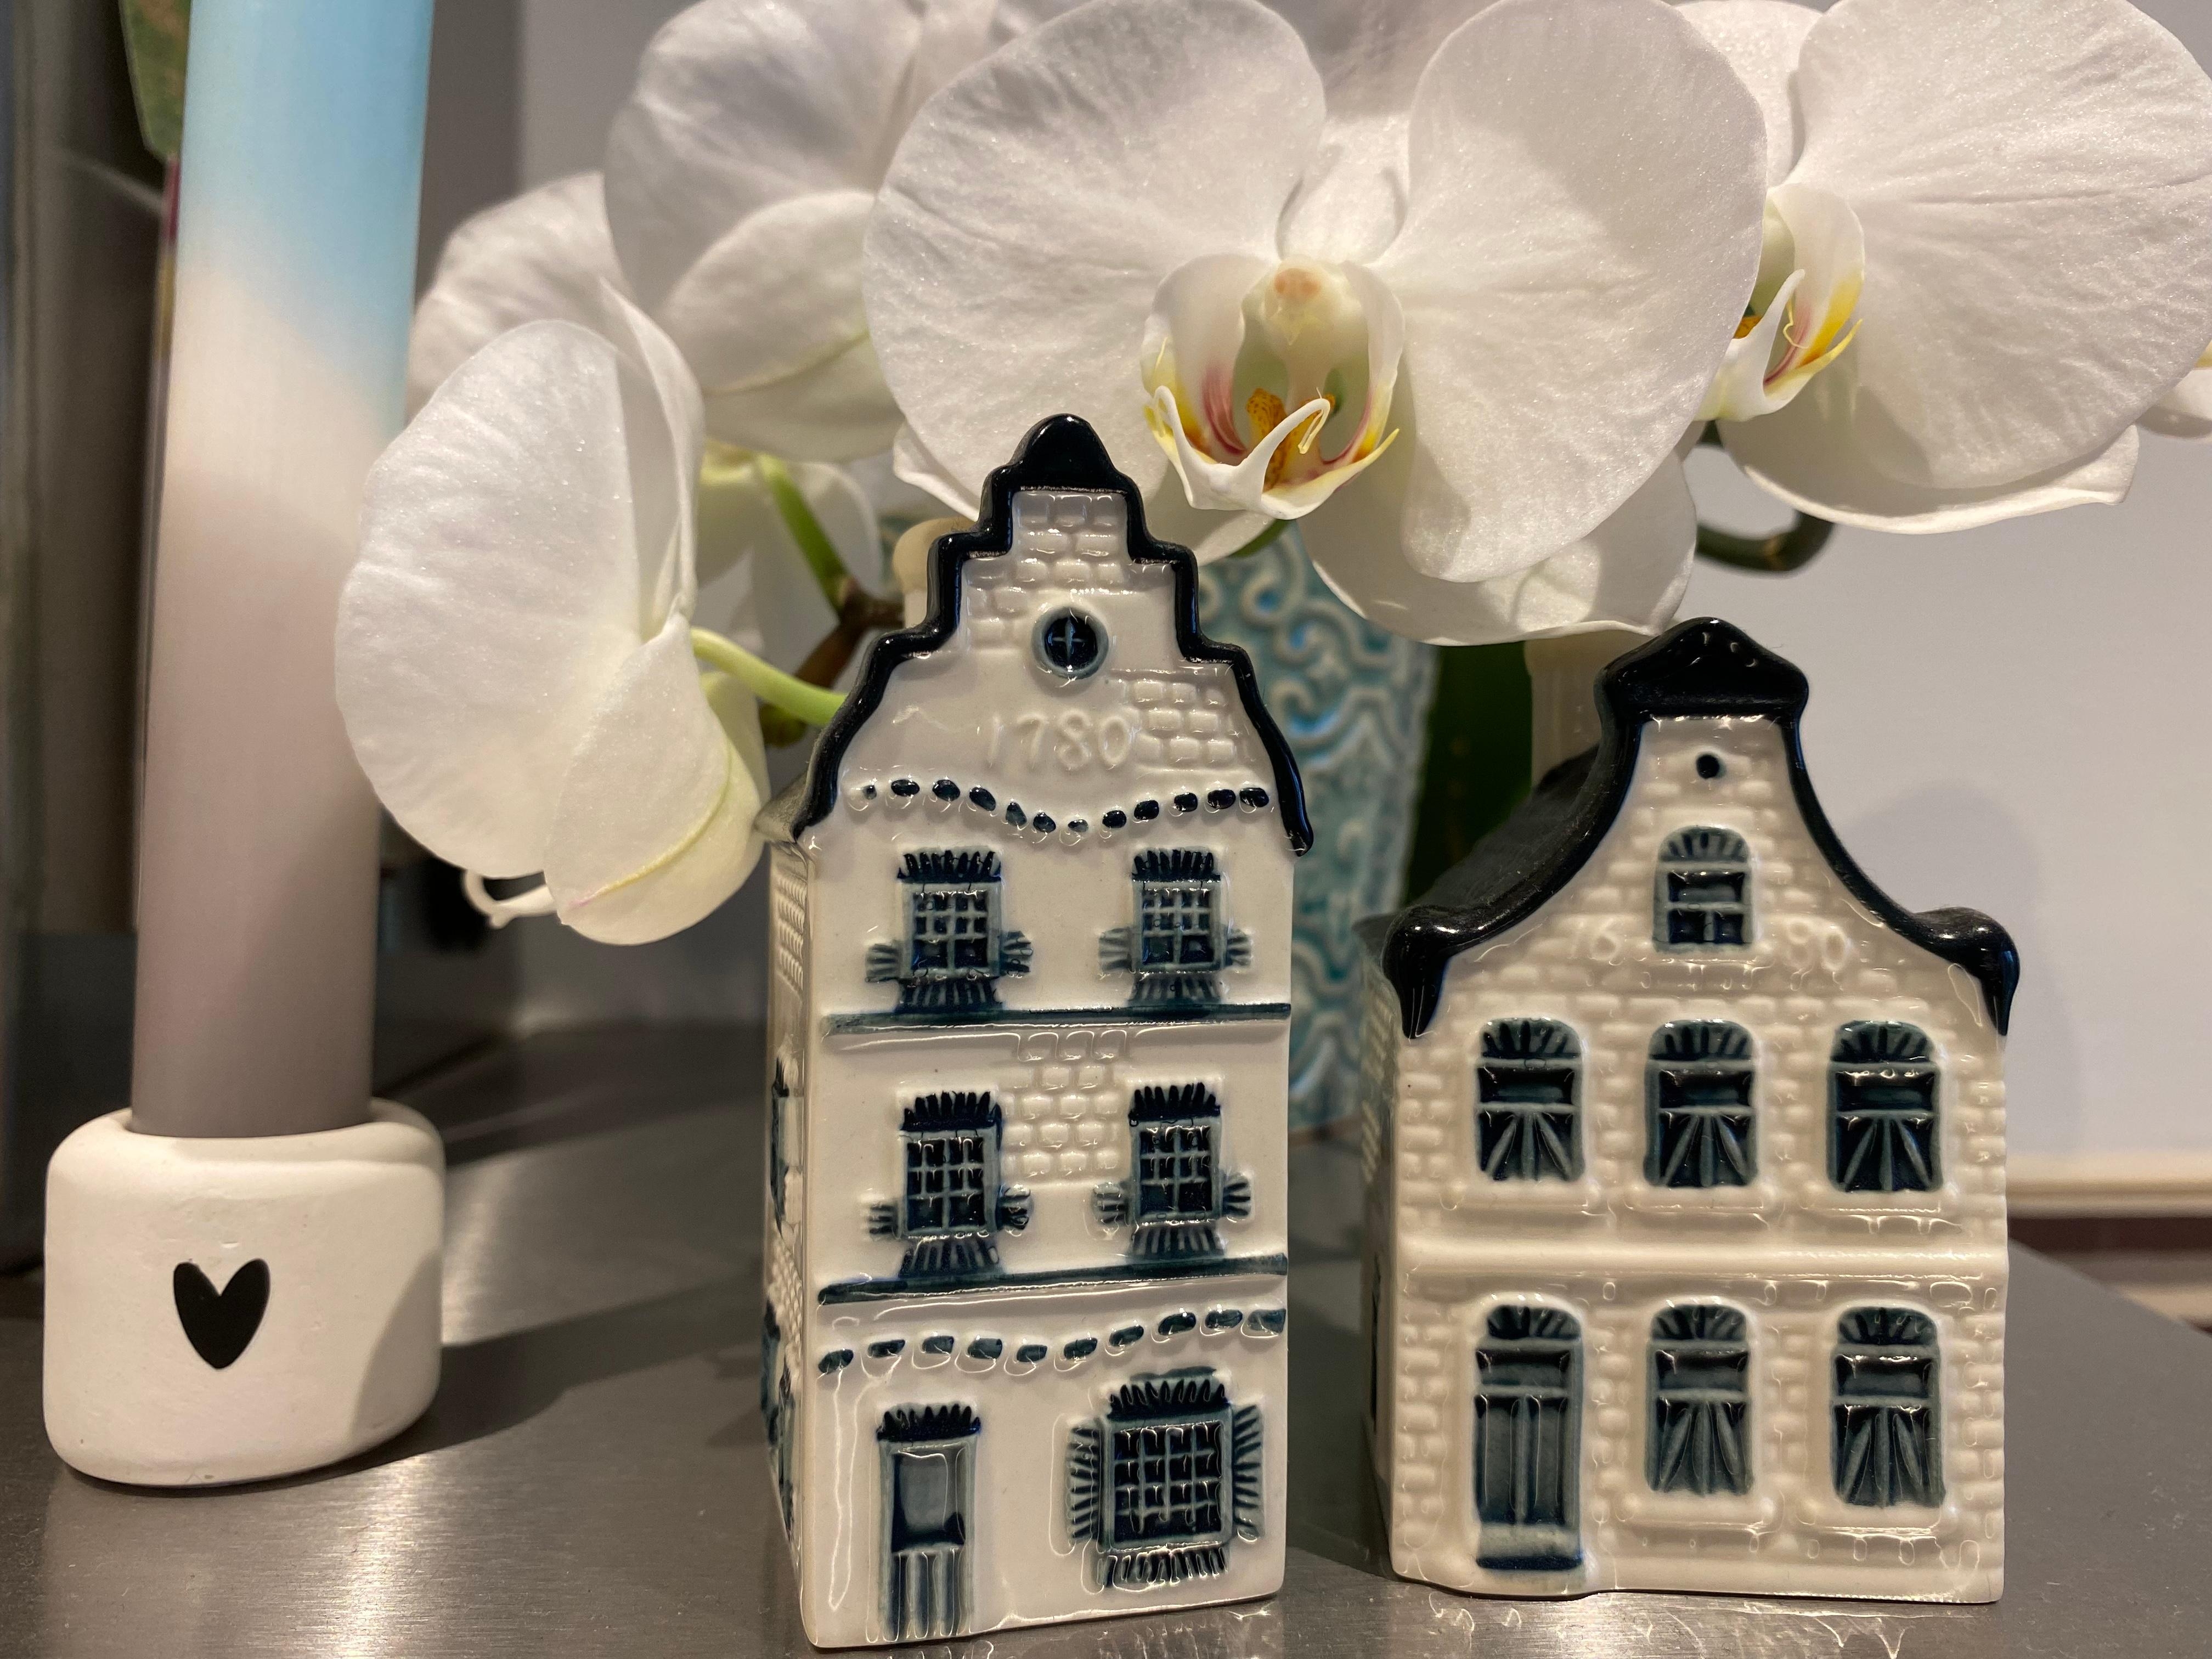 Hollandliebe 🇳🇱 
#holländischehäuser #orchidee #blumen #dipdyekerze 